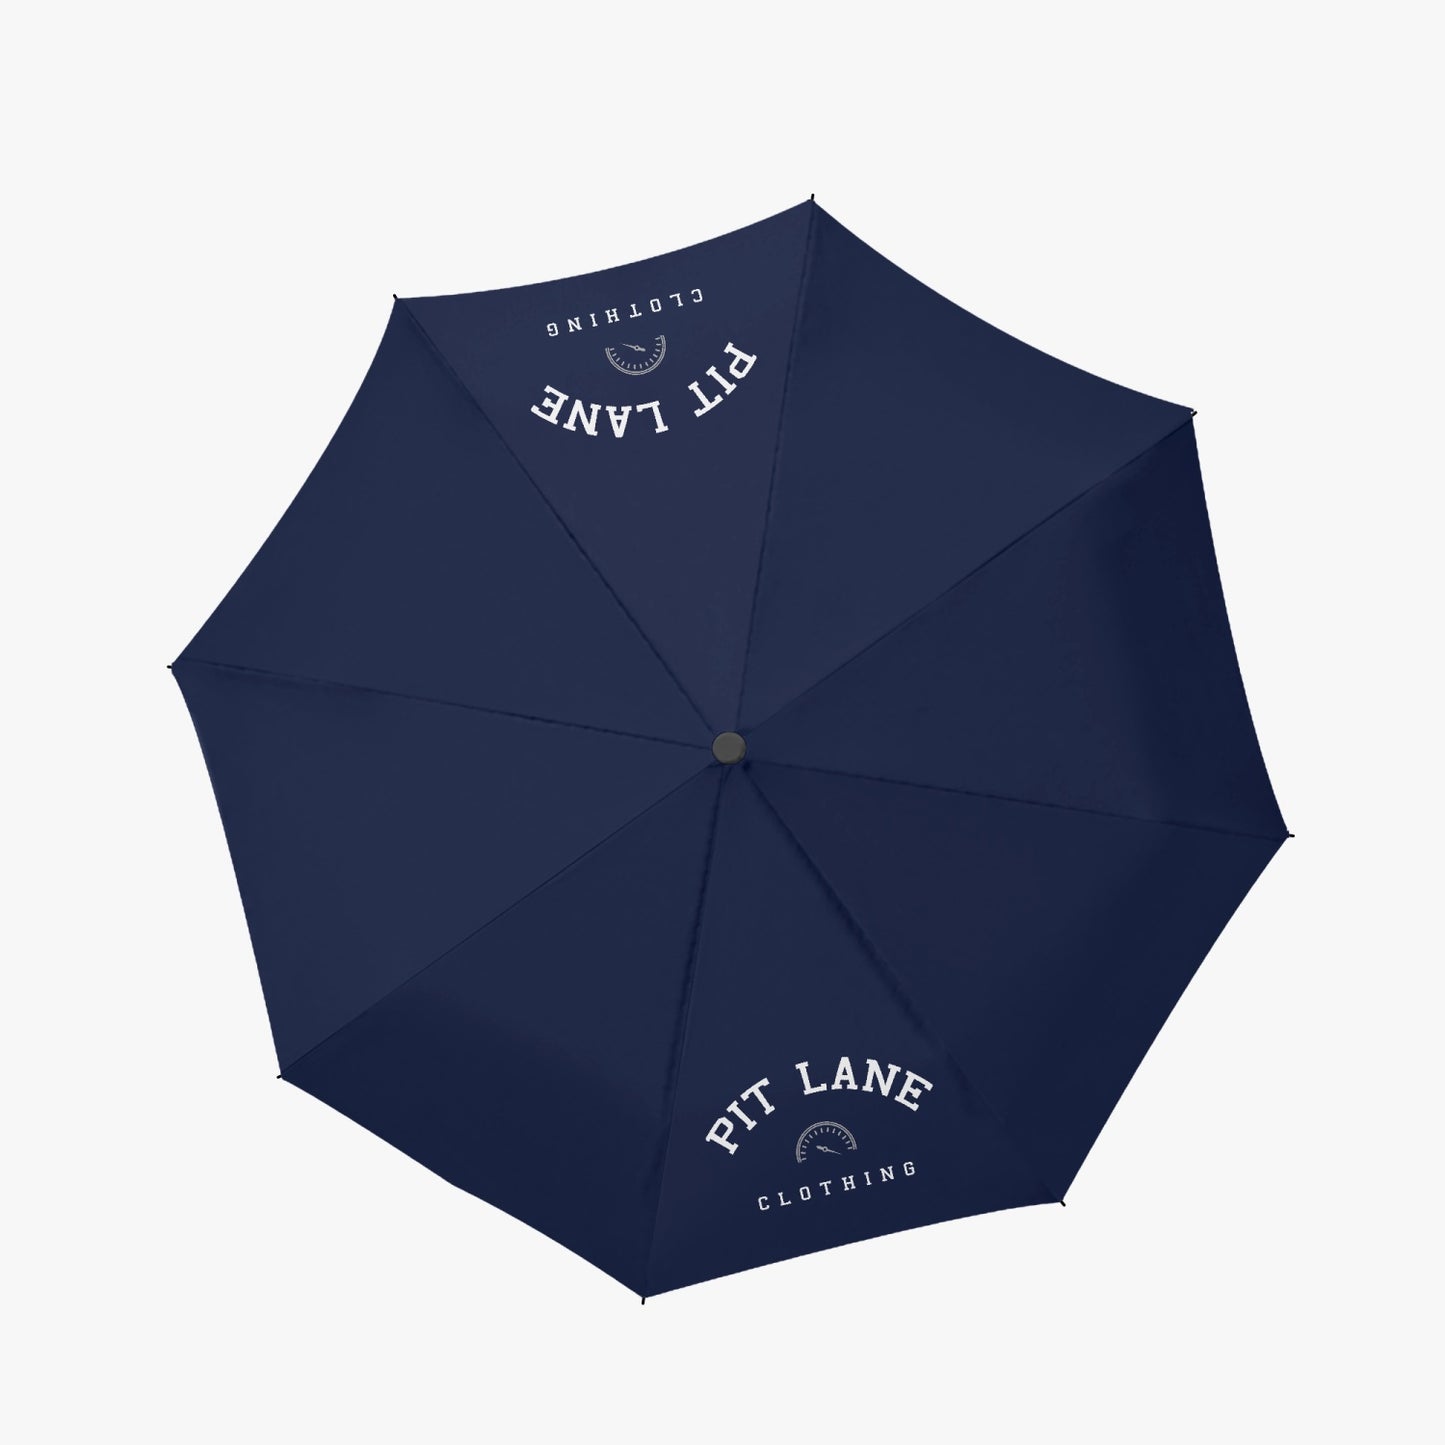 PIT LANE CLOTHING Automatic Folding Umbrella